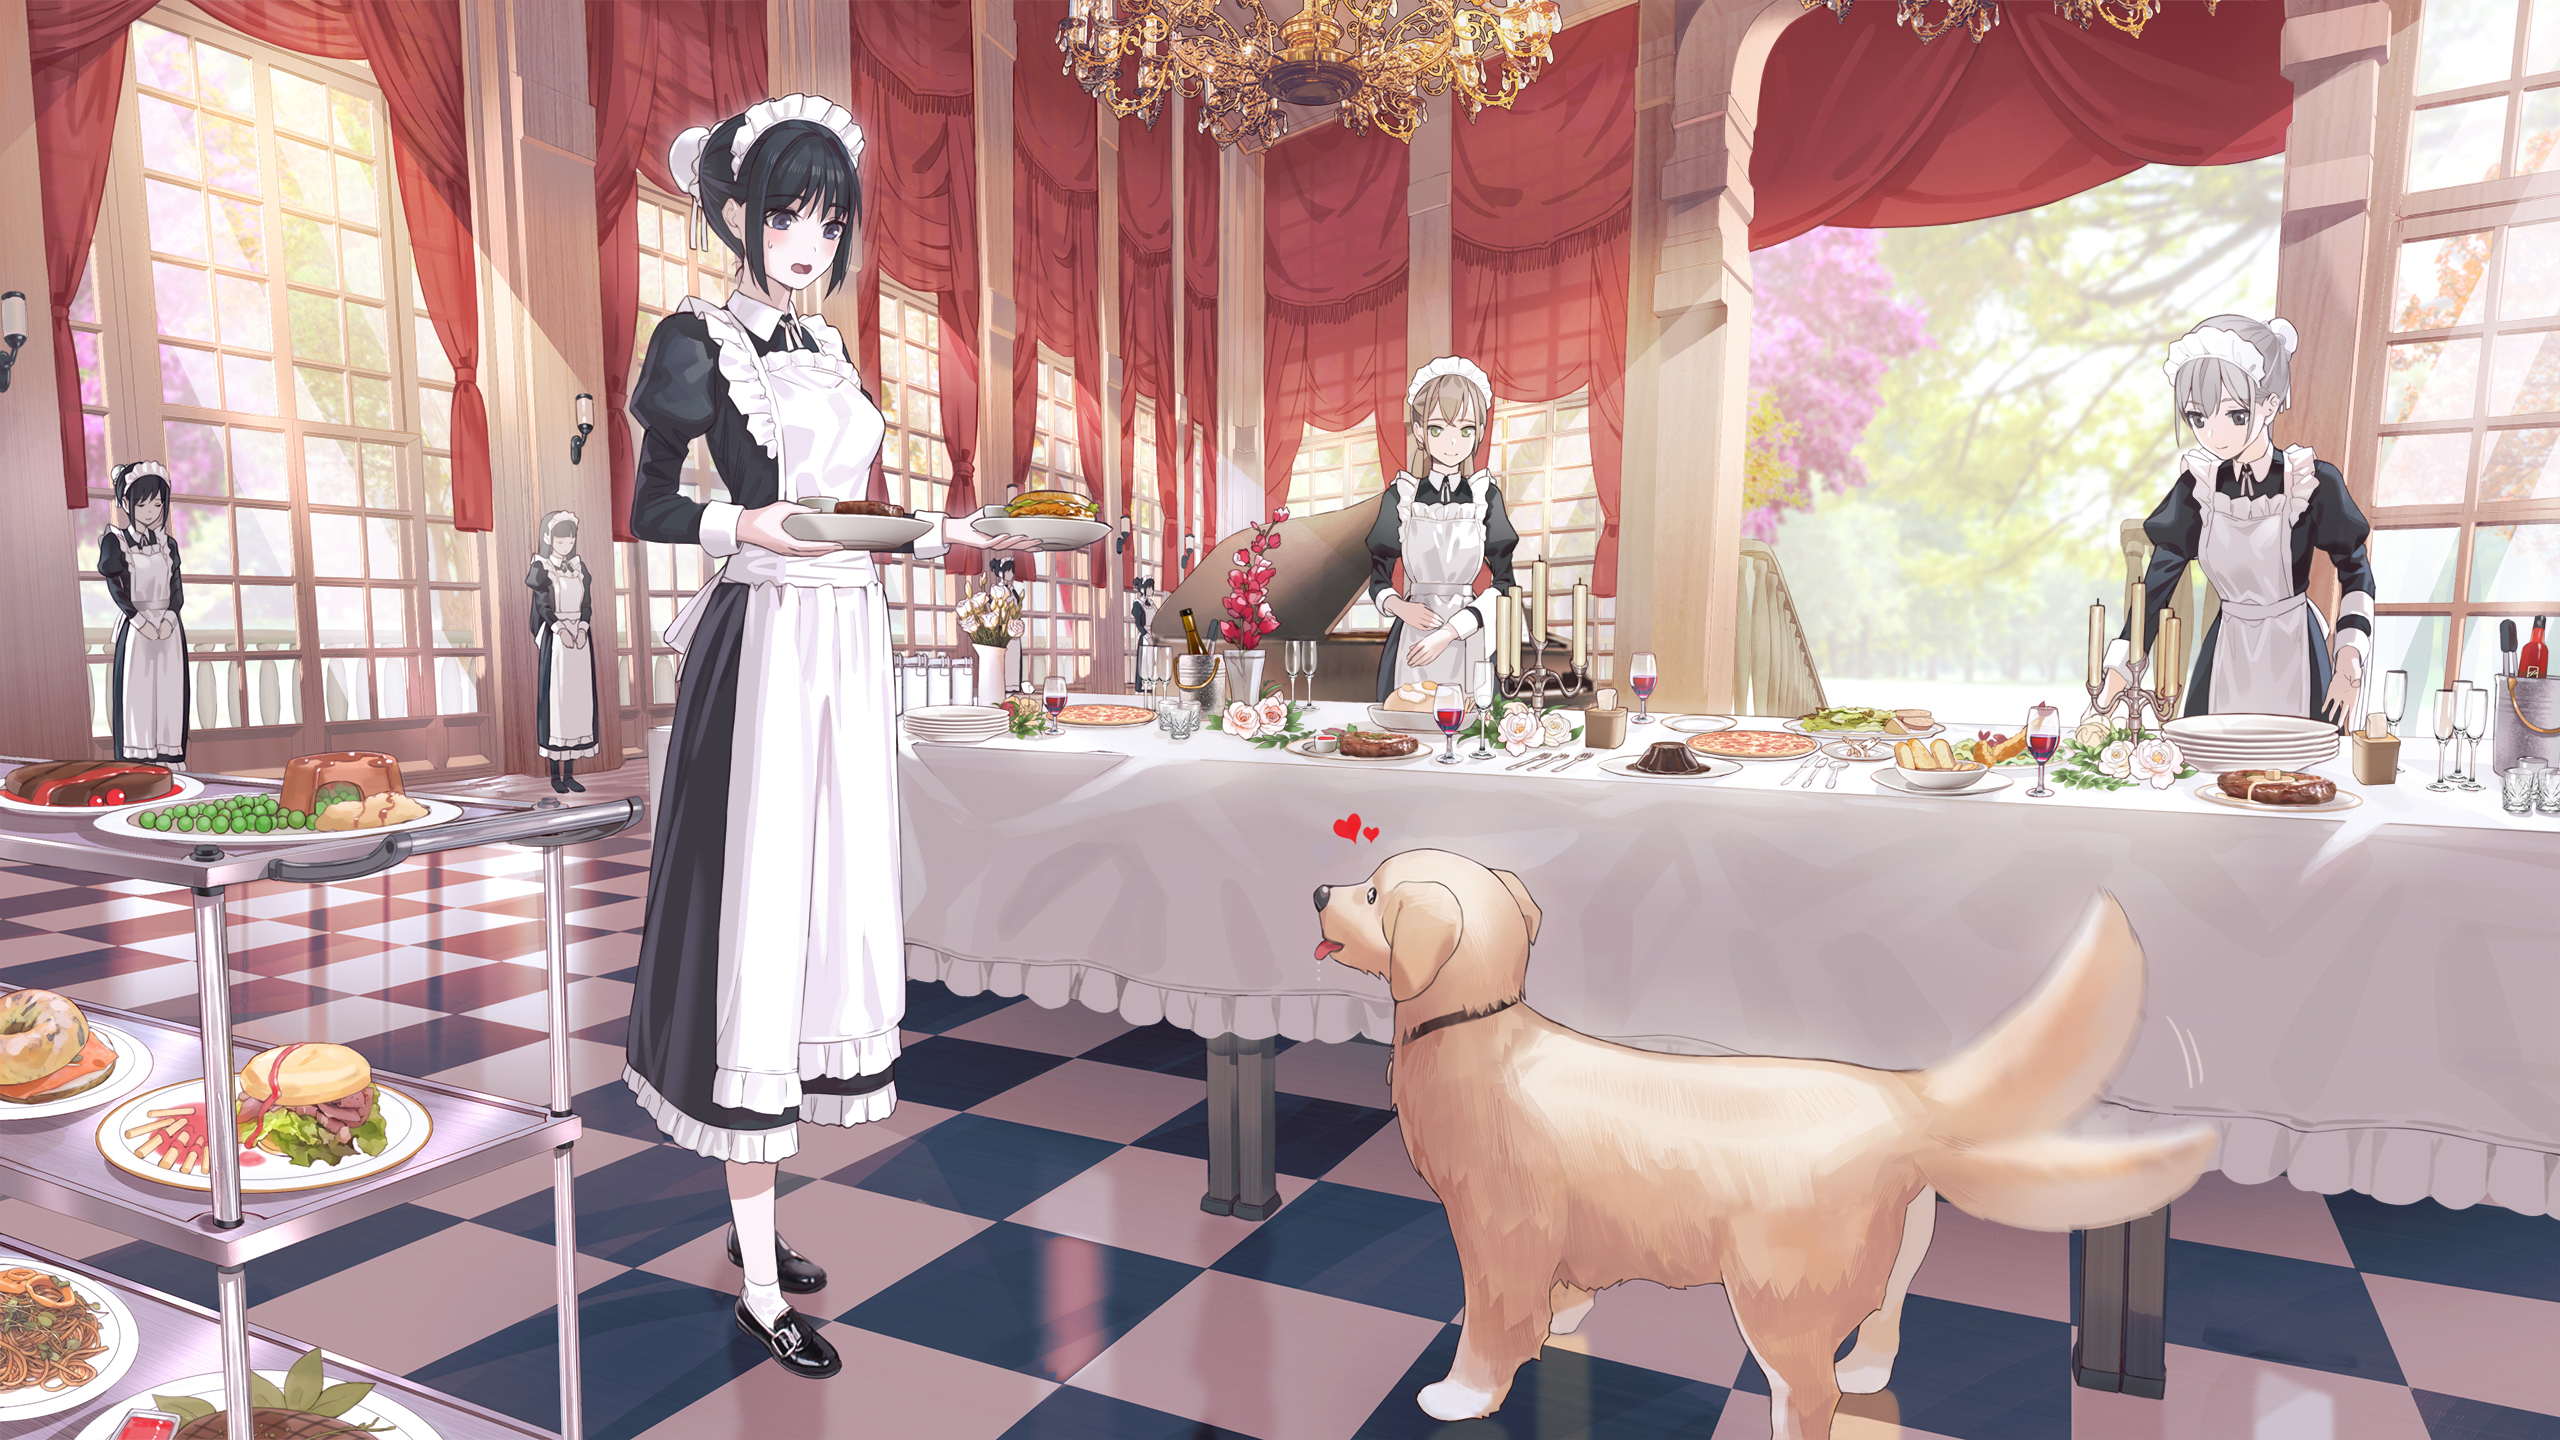 Anime 2560x1440 anime anime girls KFR artwork dog maid maid outfit food standing